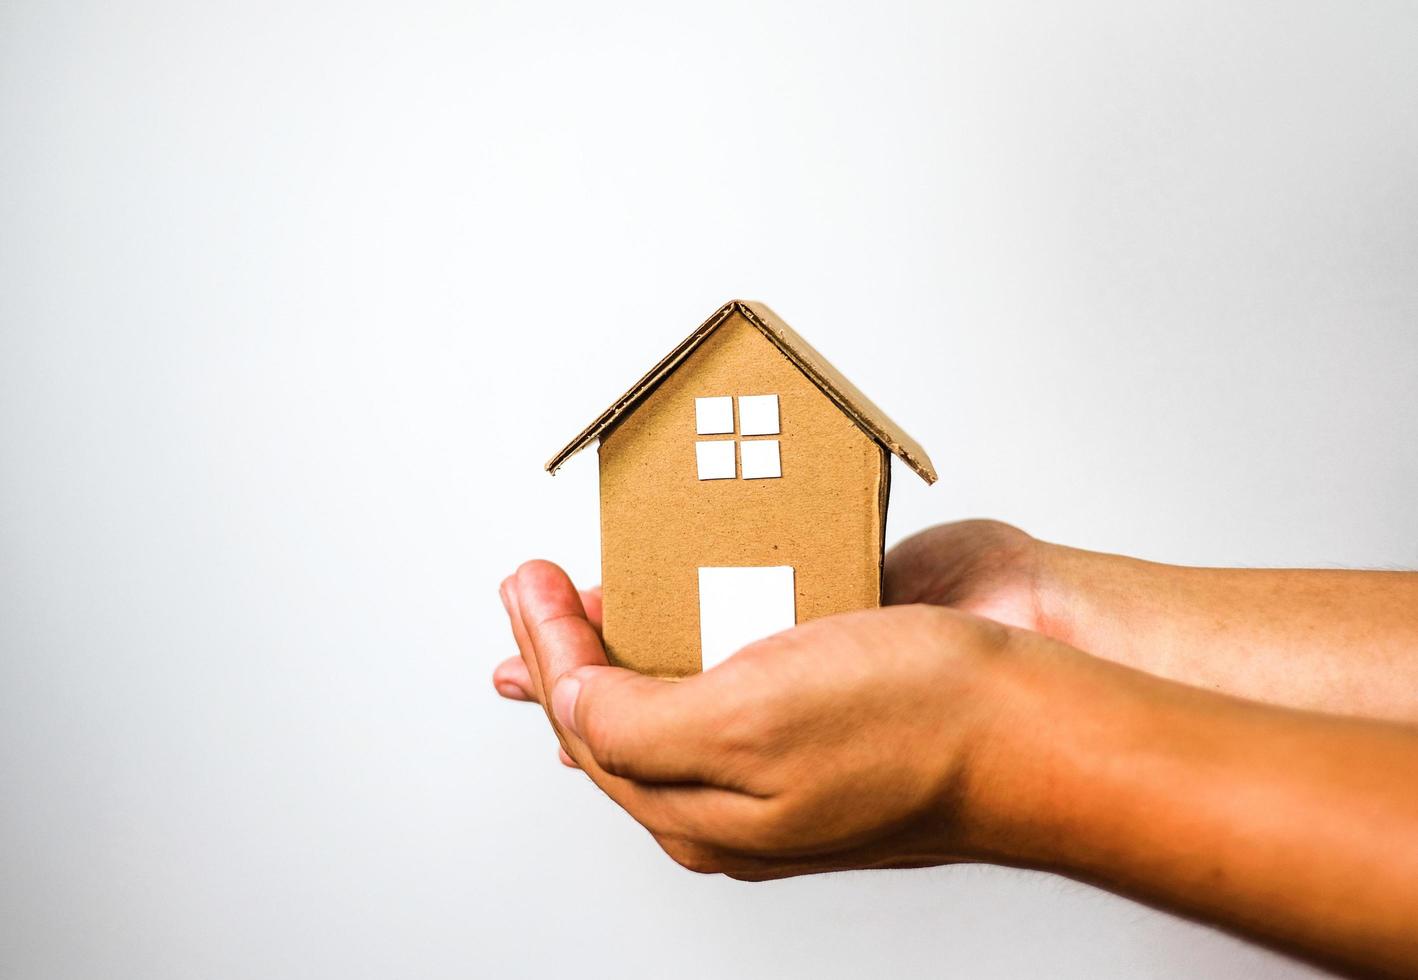 modelo de casa marrón en 2 manos humanas sobre fondo blanco. inversión de la casa y concepto de deuda. foto